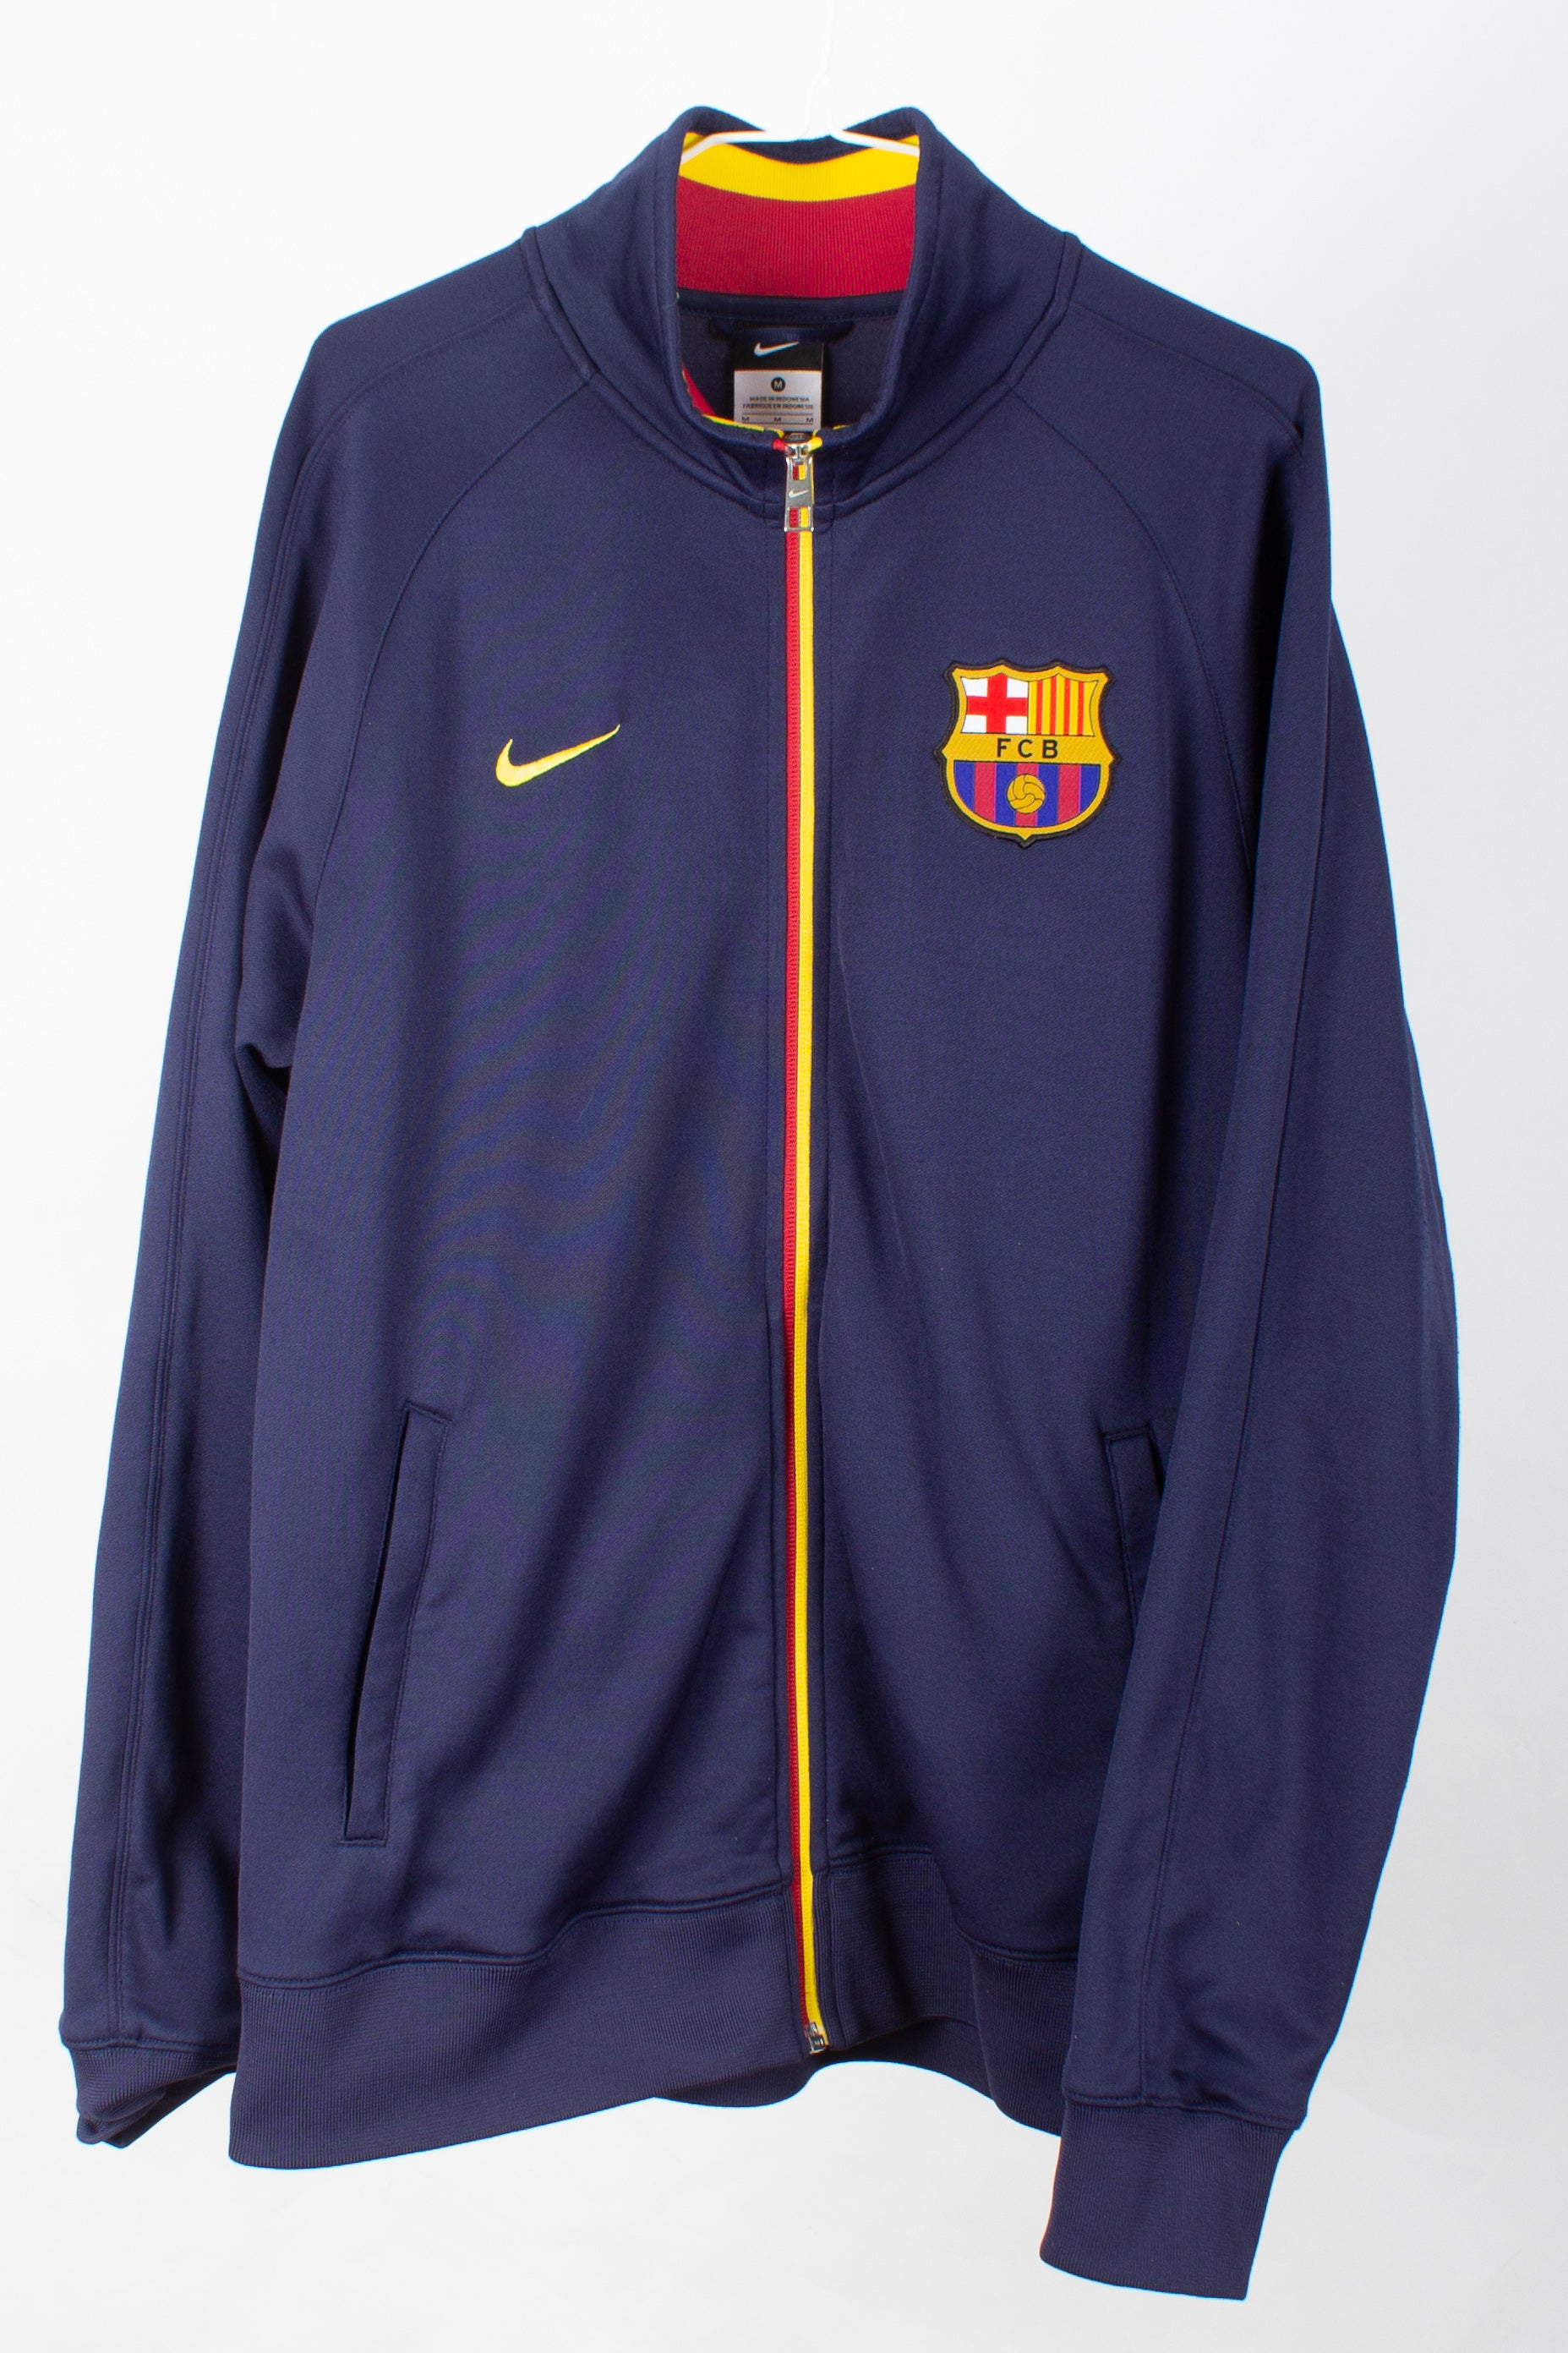 Barcelona 2012/13 Track Training Jacket (M)